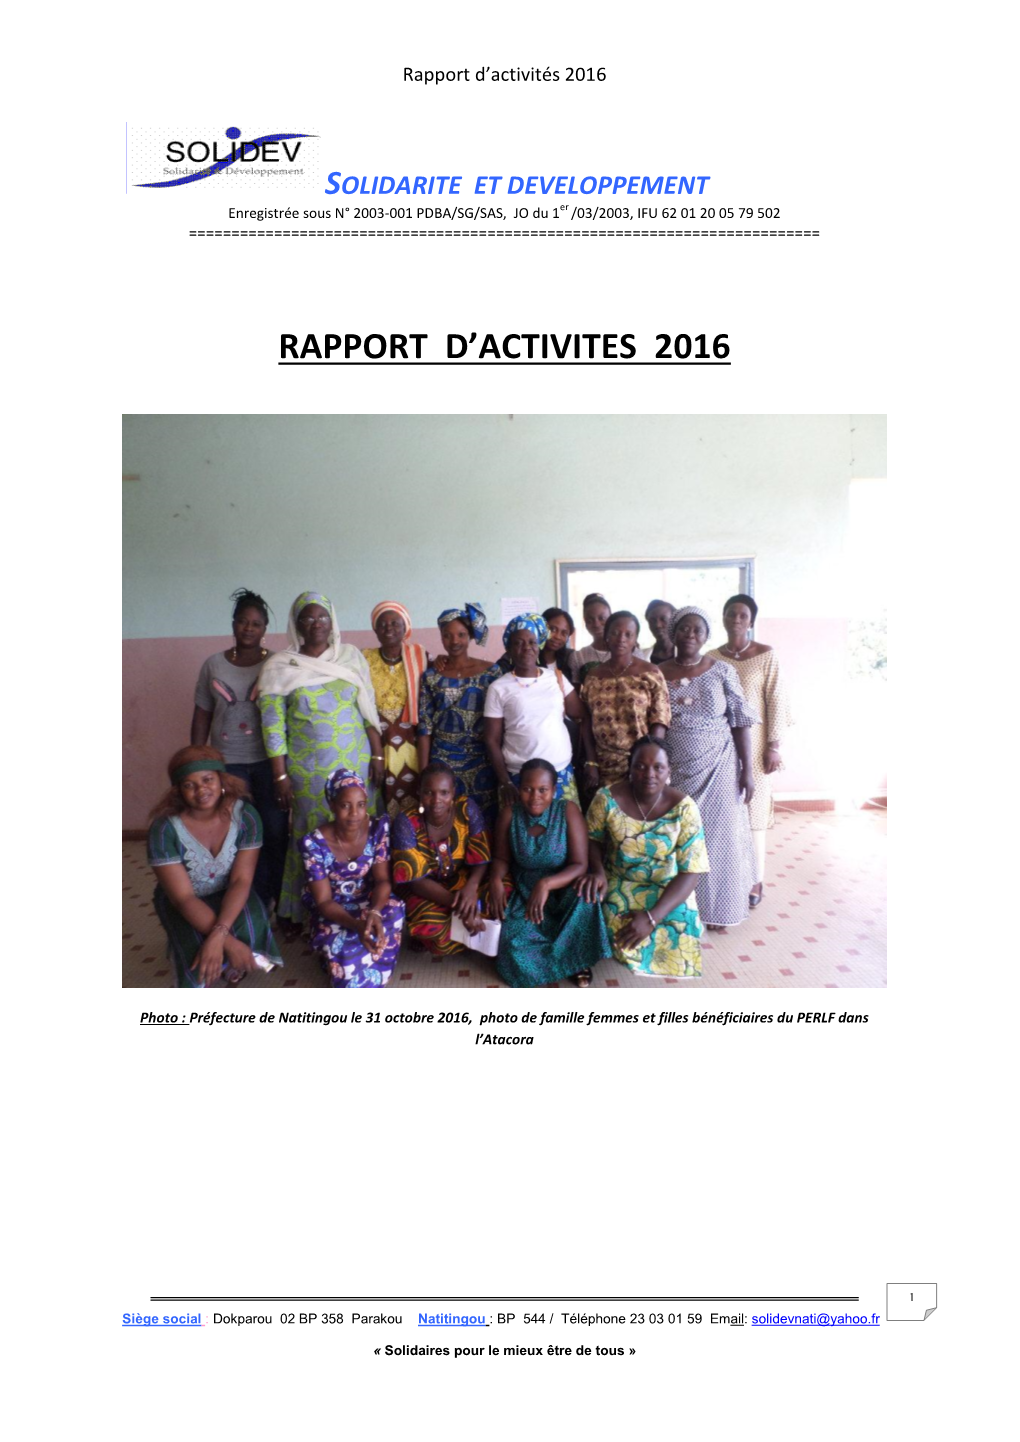 Rapport D'activites 2016